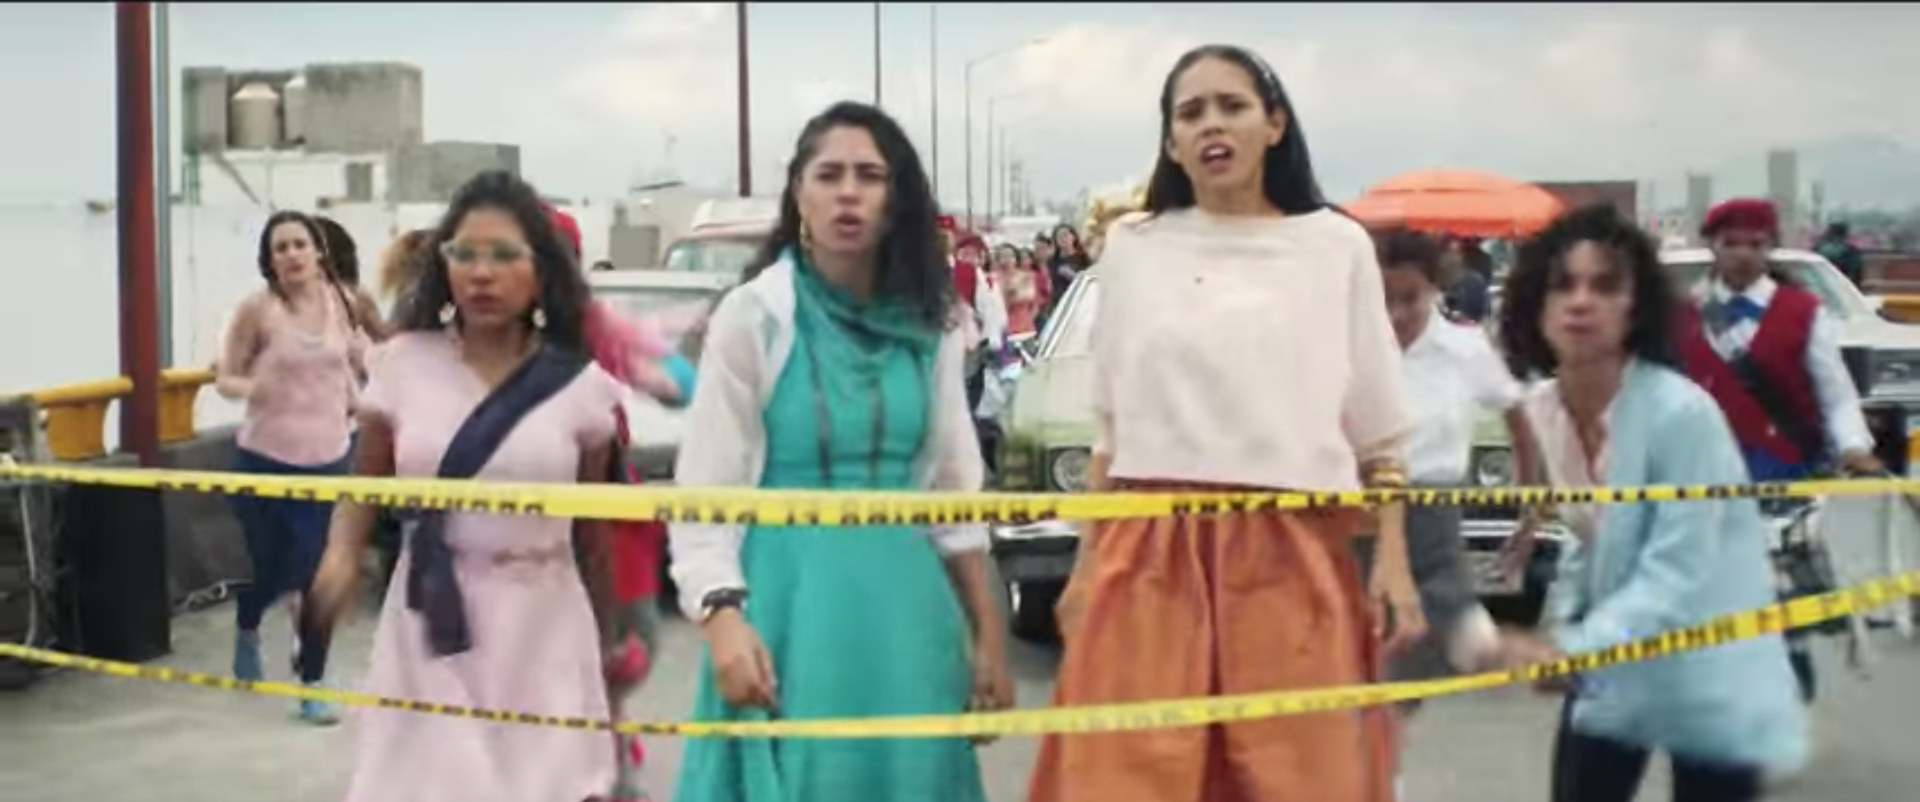 Acelerar Credo Pisoteando Juntas Imparables: El anuncio de Nike que muestra el poder de las mujeres  mexicanas | CNN